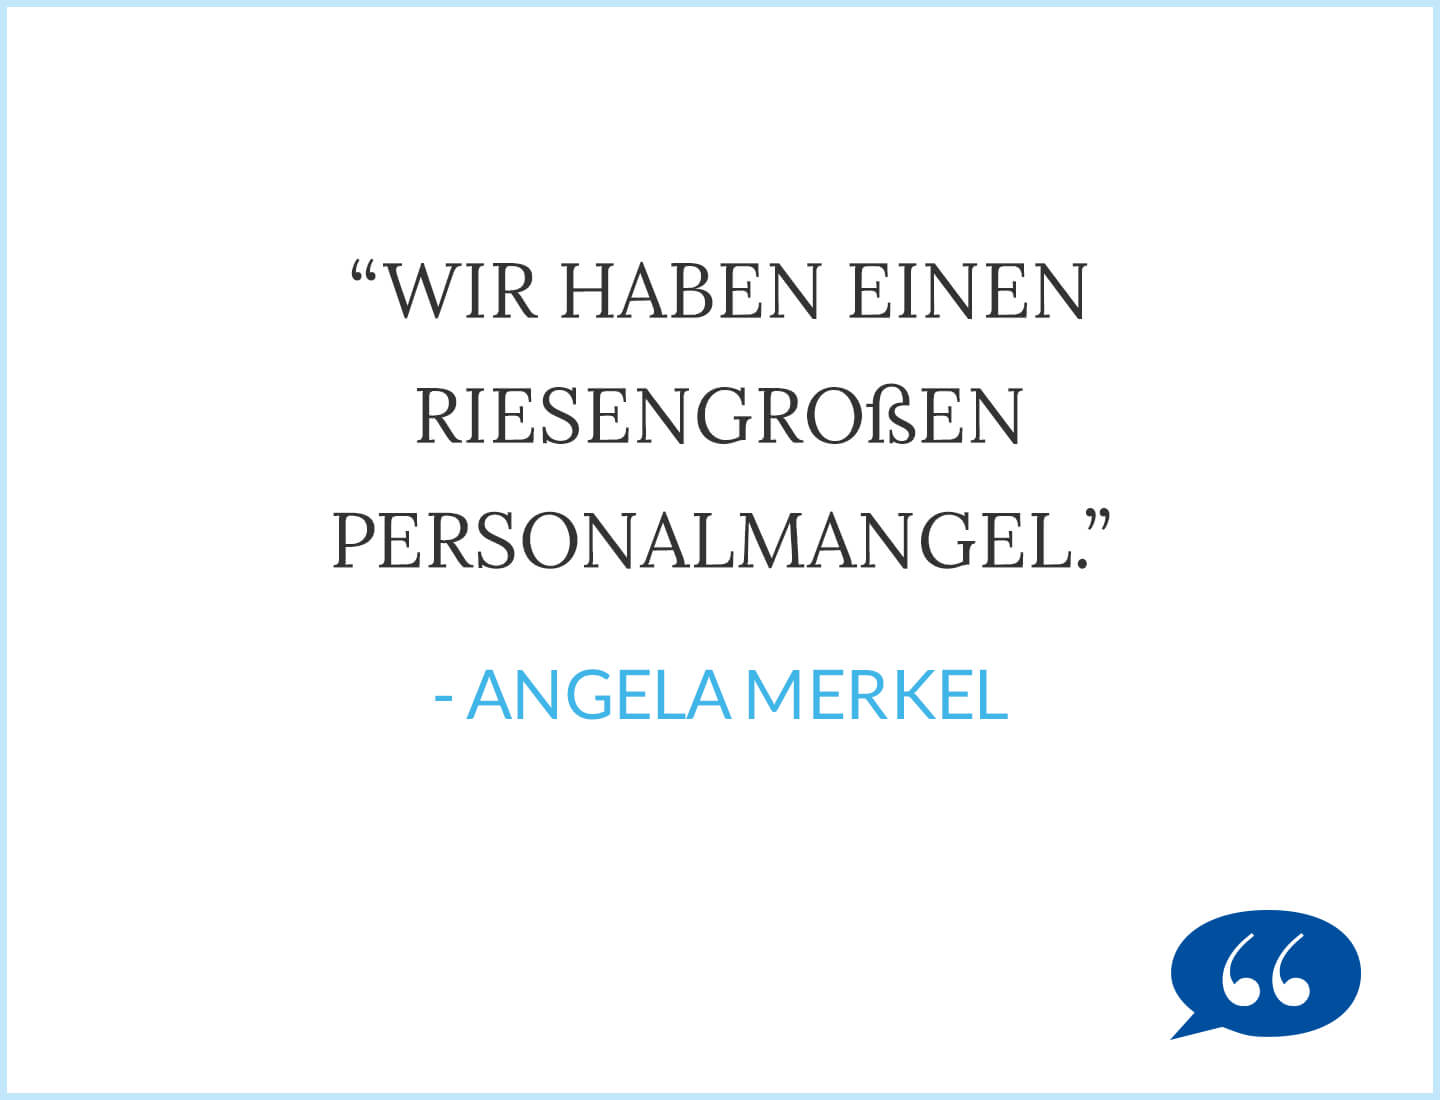 Zitat: Wir haben einen riesengroßen Personalmangel. - Angela Merkel